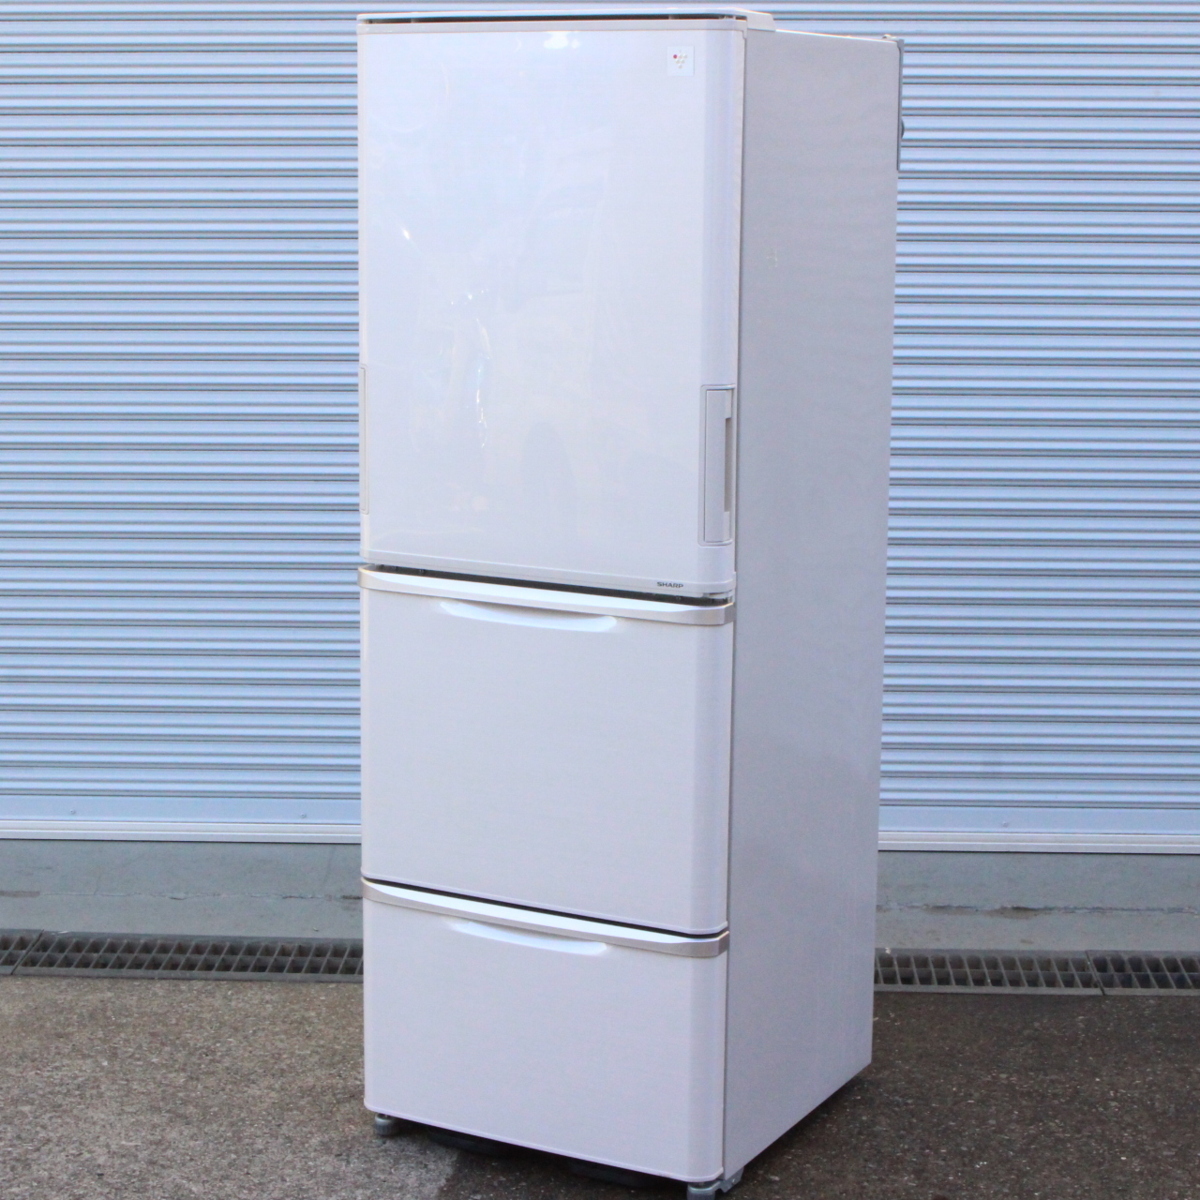 SHARP ノンフロン冷凍冷蔵庫 SJ-PW35A-C 3ドア 350L 2015年製 シャープ